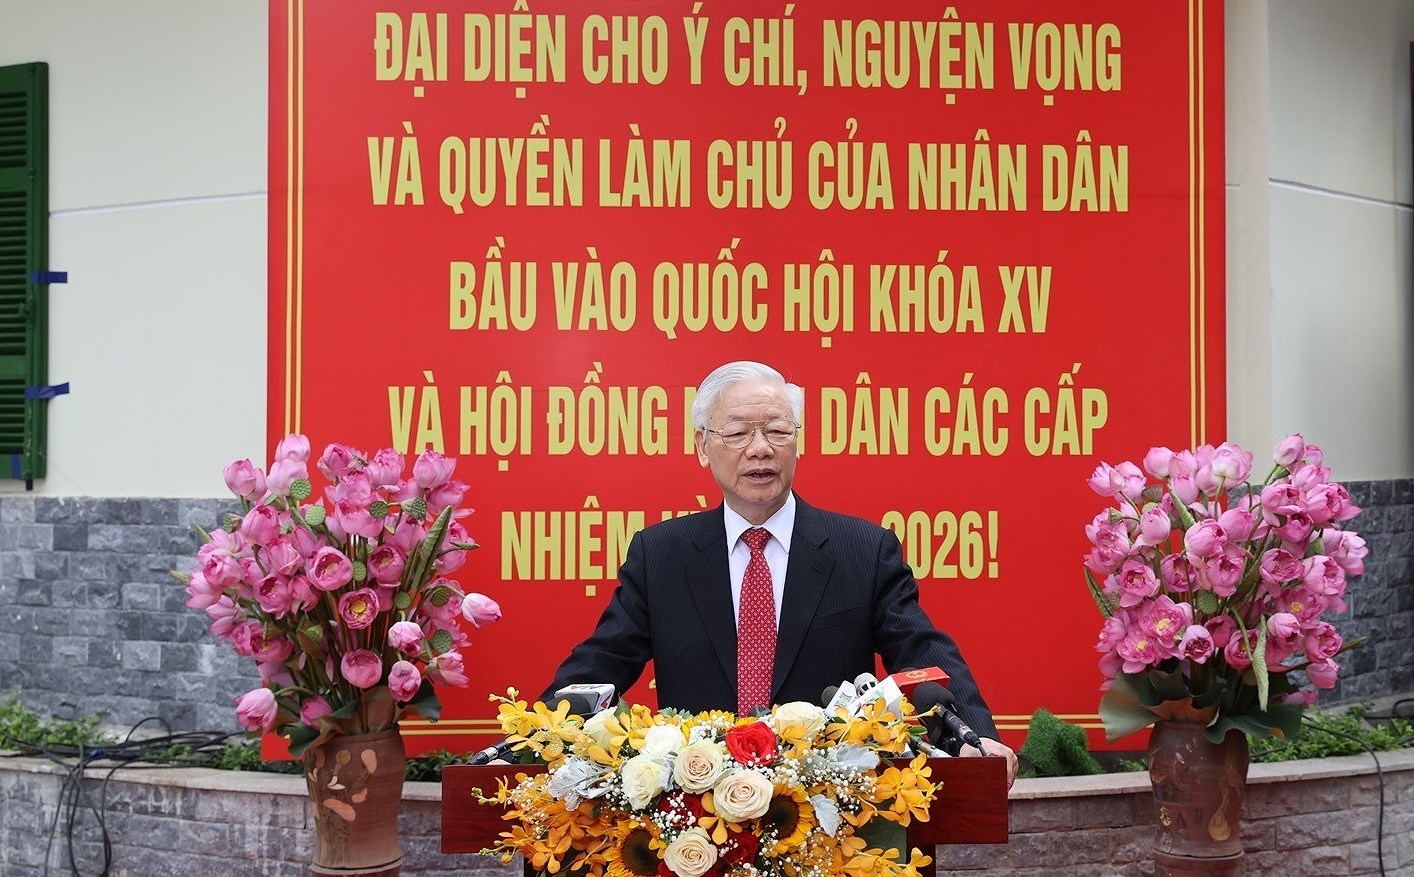 Le Vietnam entre dans une nouvelle etape de developpement, dit le leader hinh anh 1